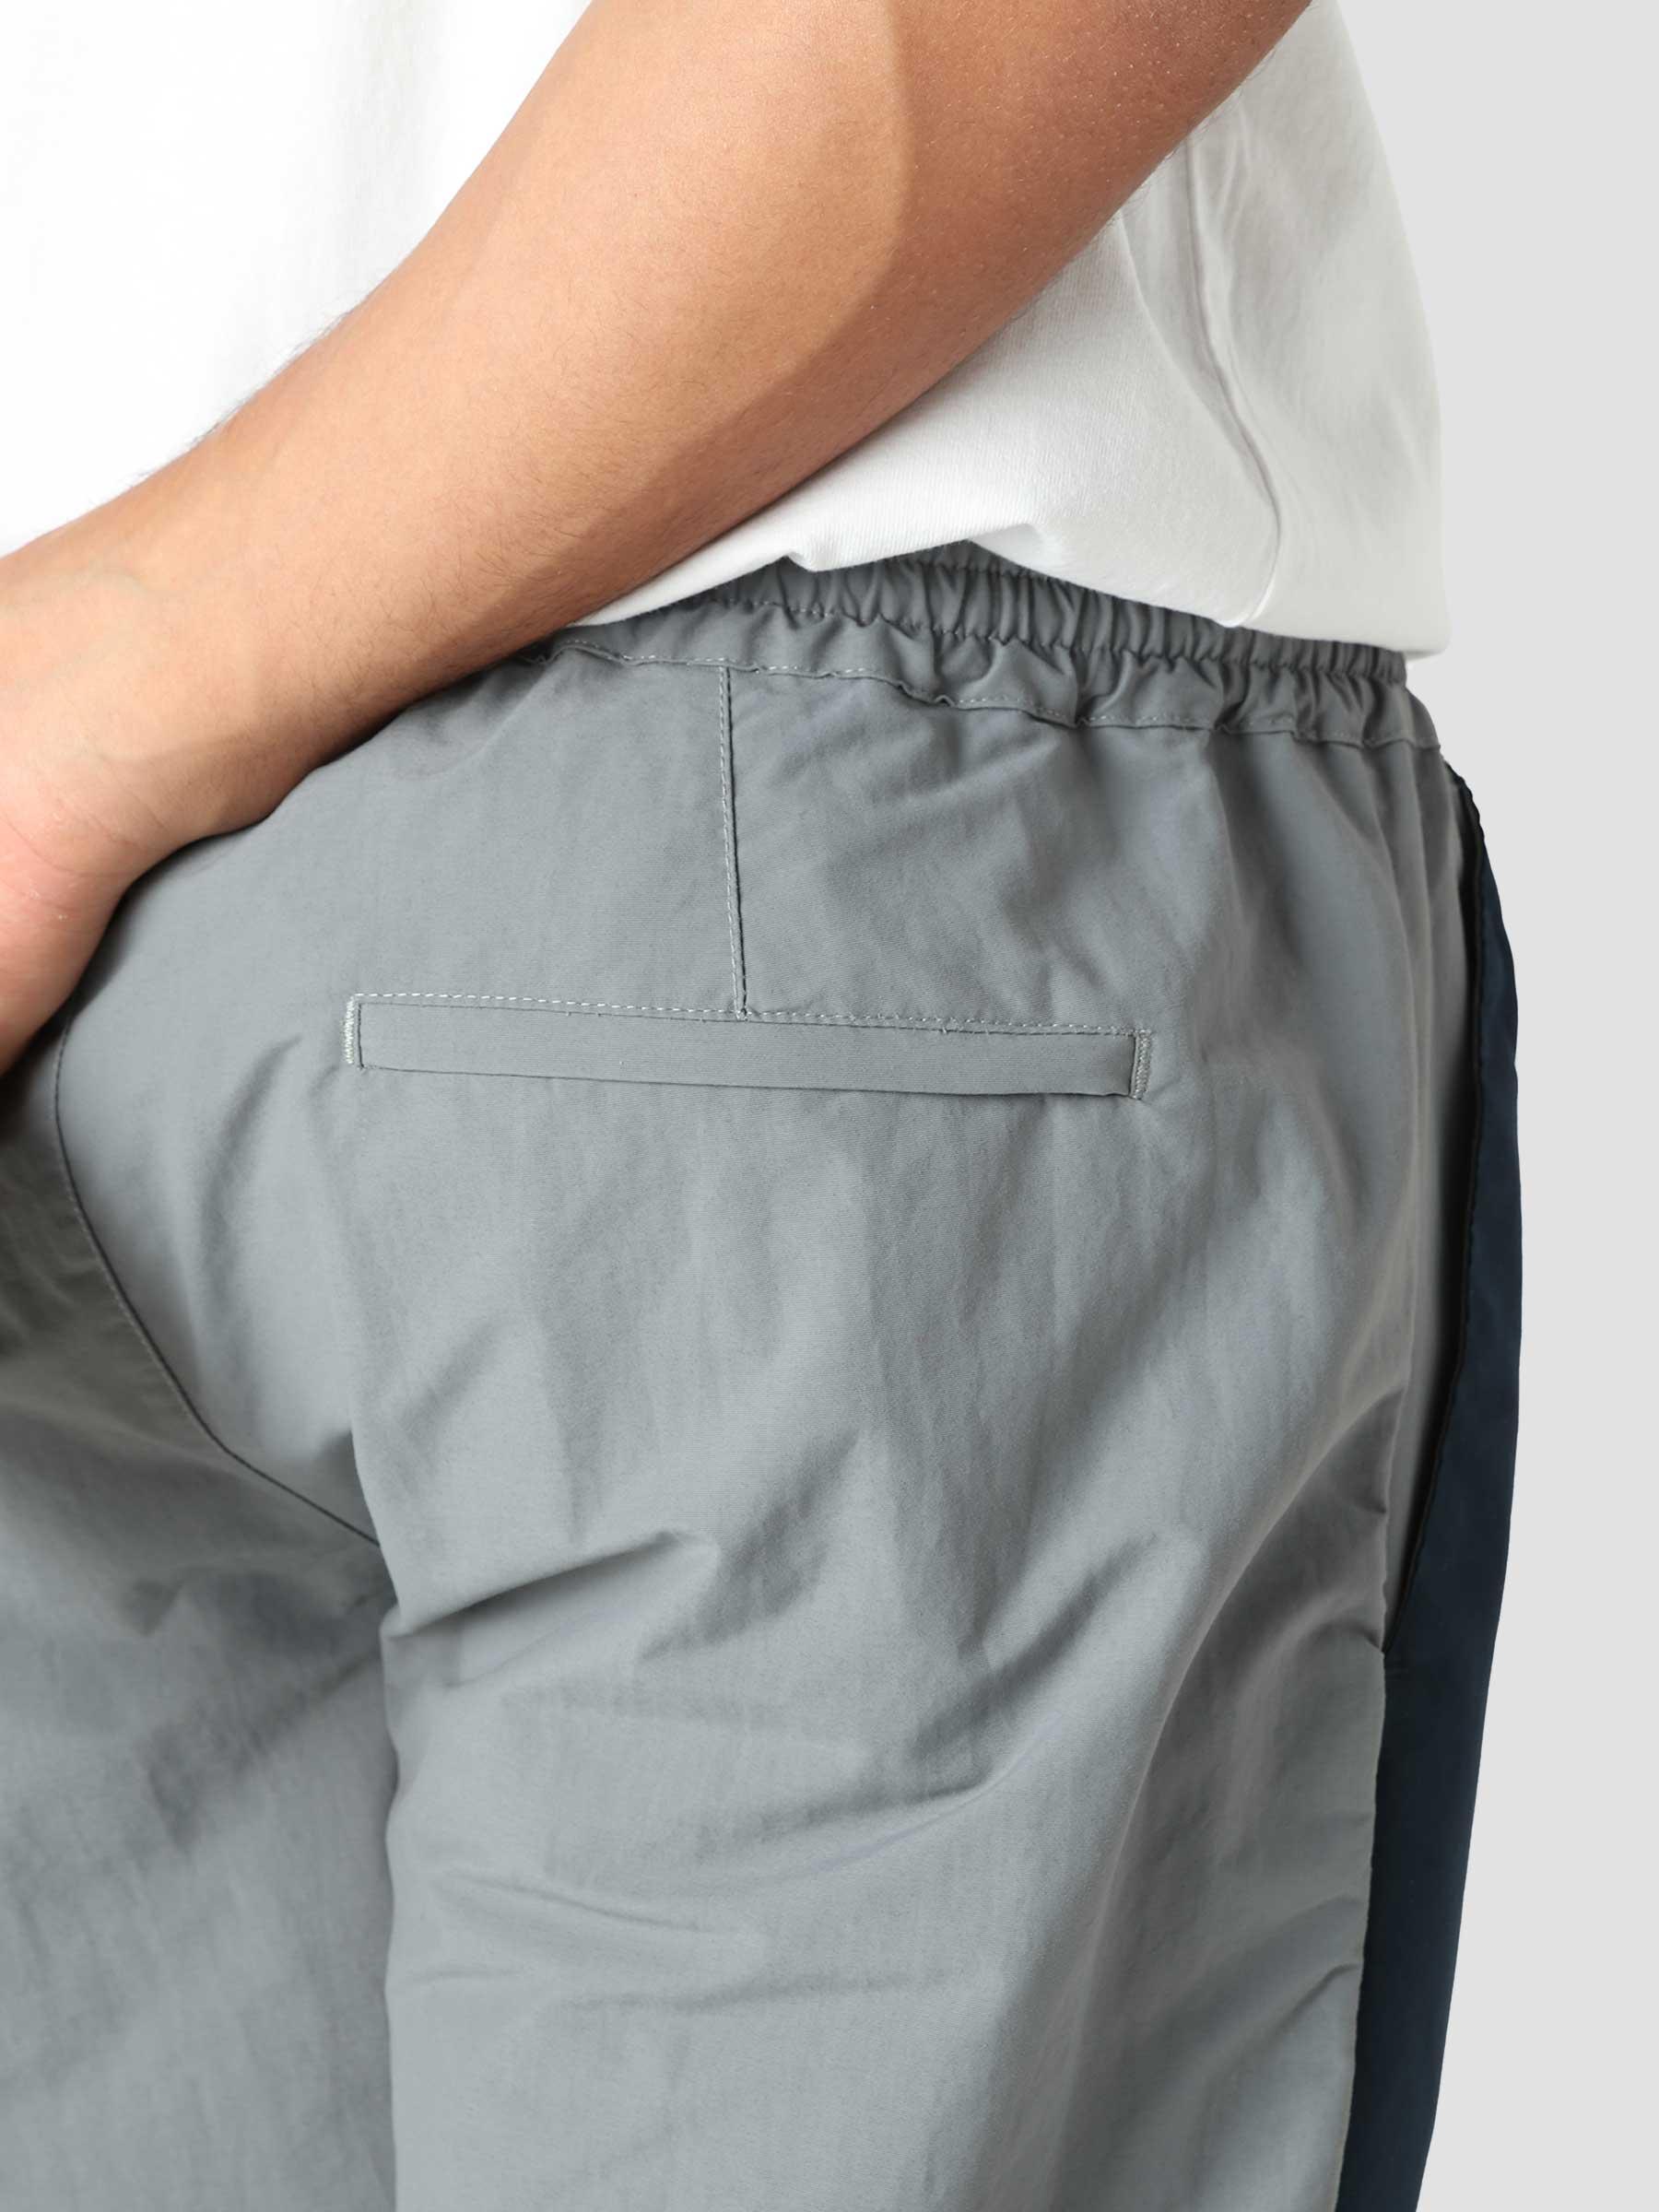 Jaden Pants Pants Grey Navy AW21-074P